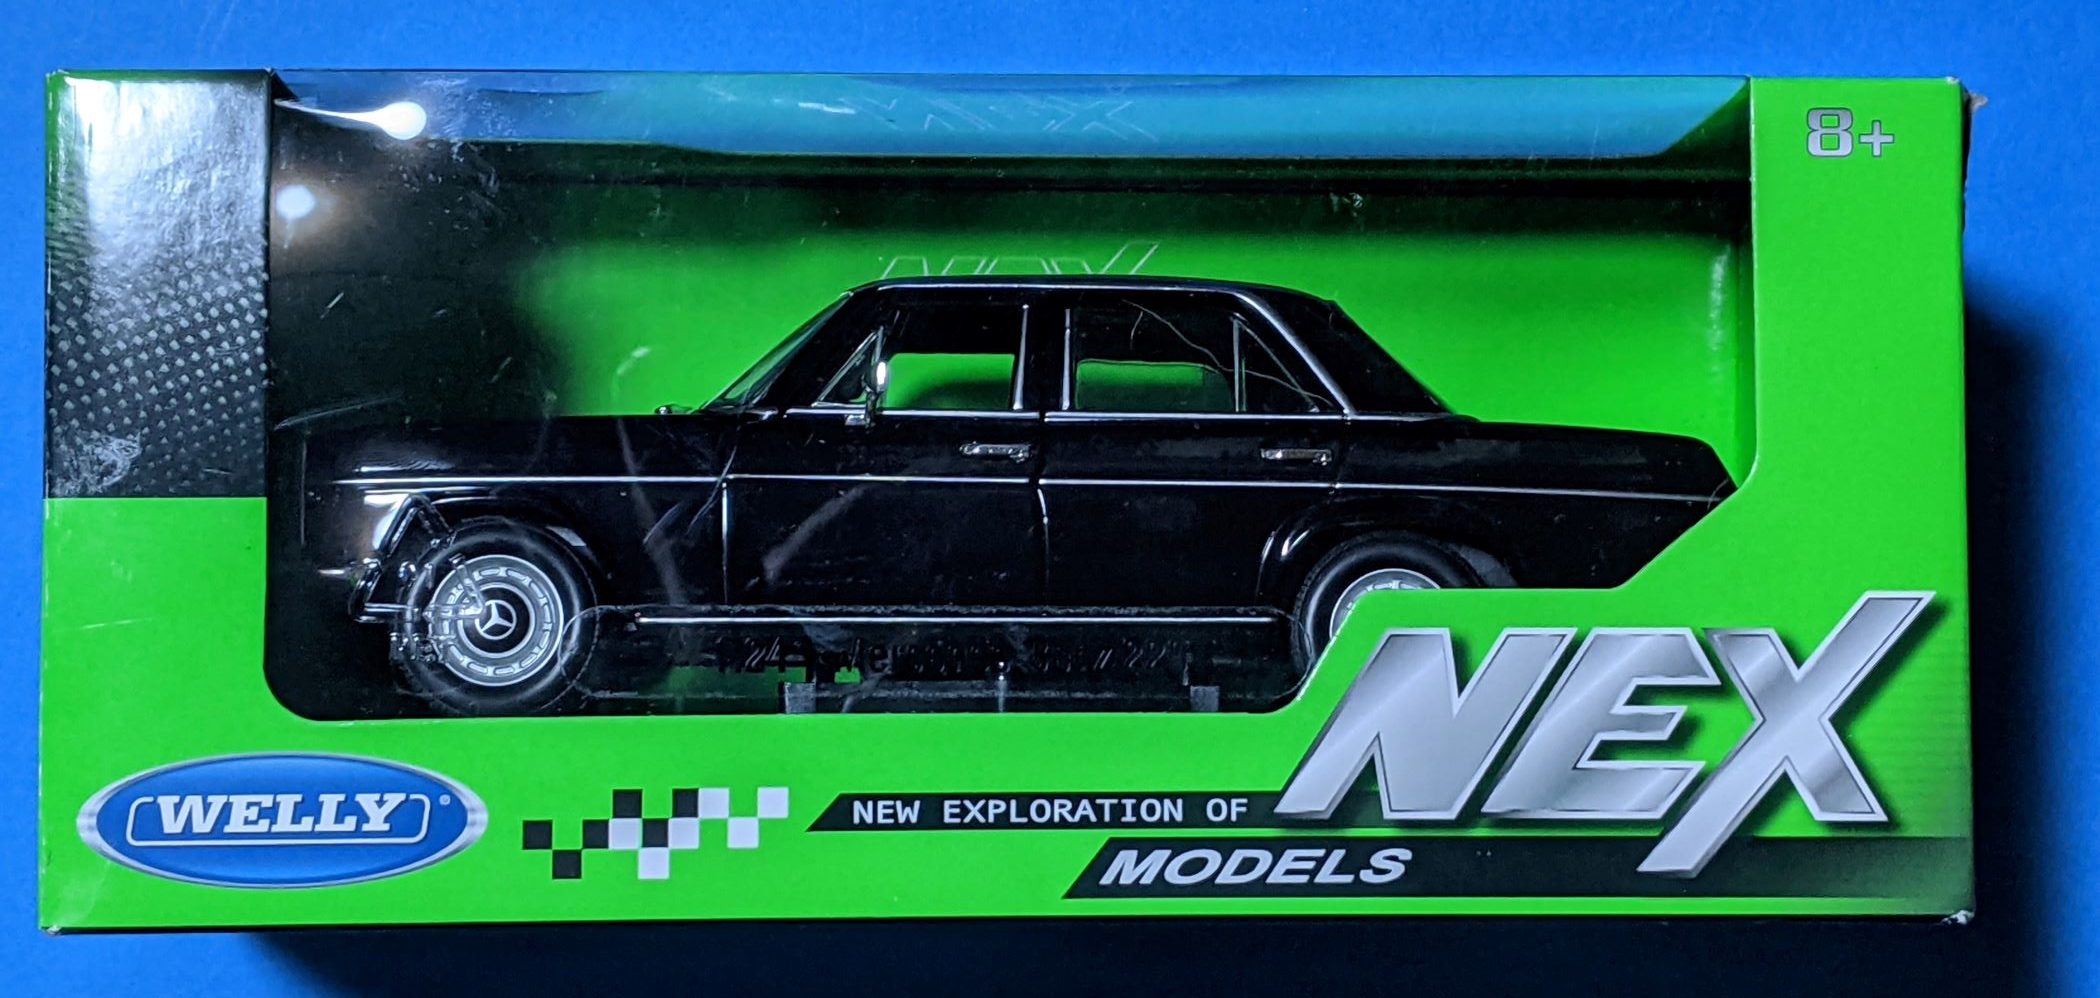 Welly Nex メルセデス ベンツ 2 カスタムカーモデルのお供 車モデルのホイール情報